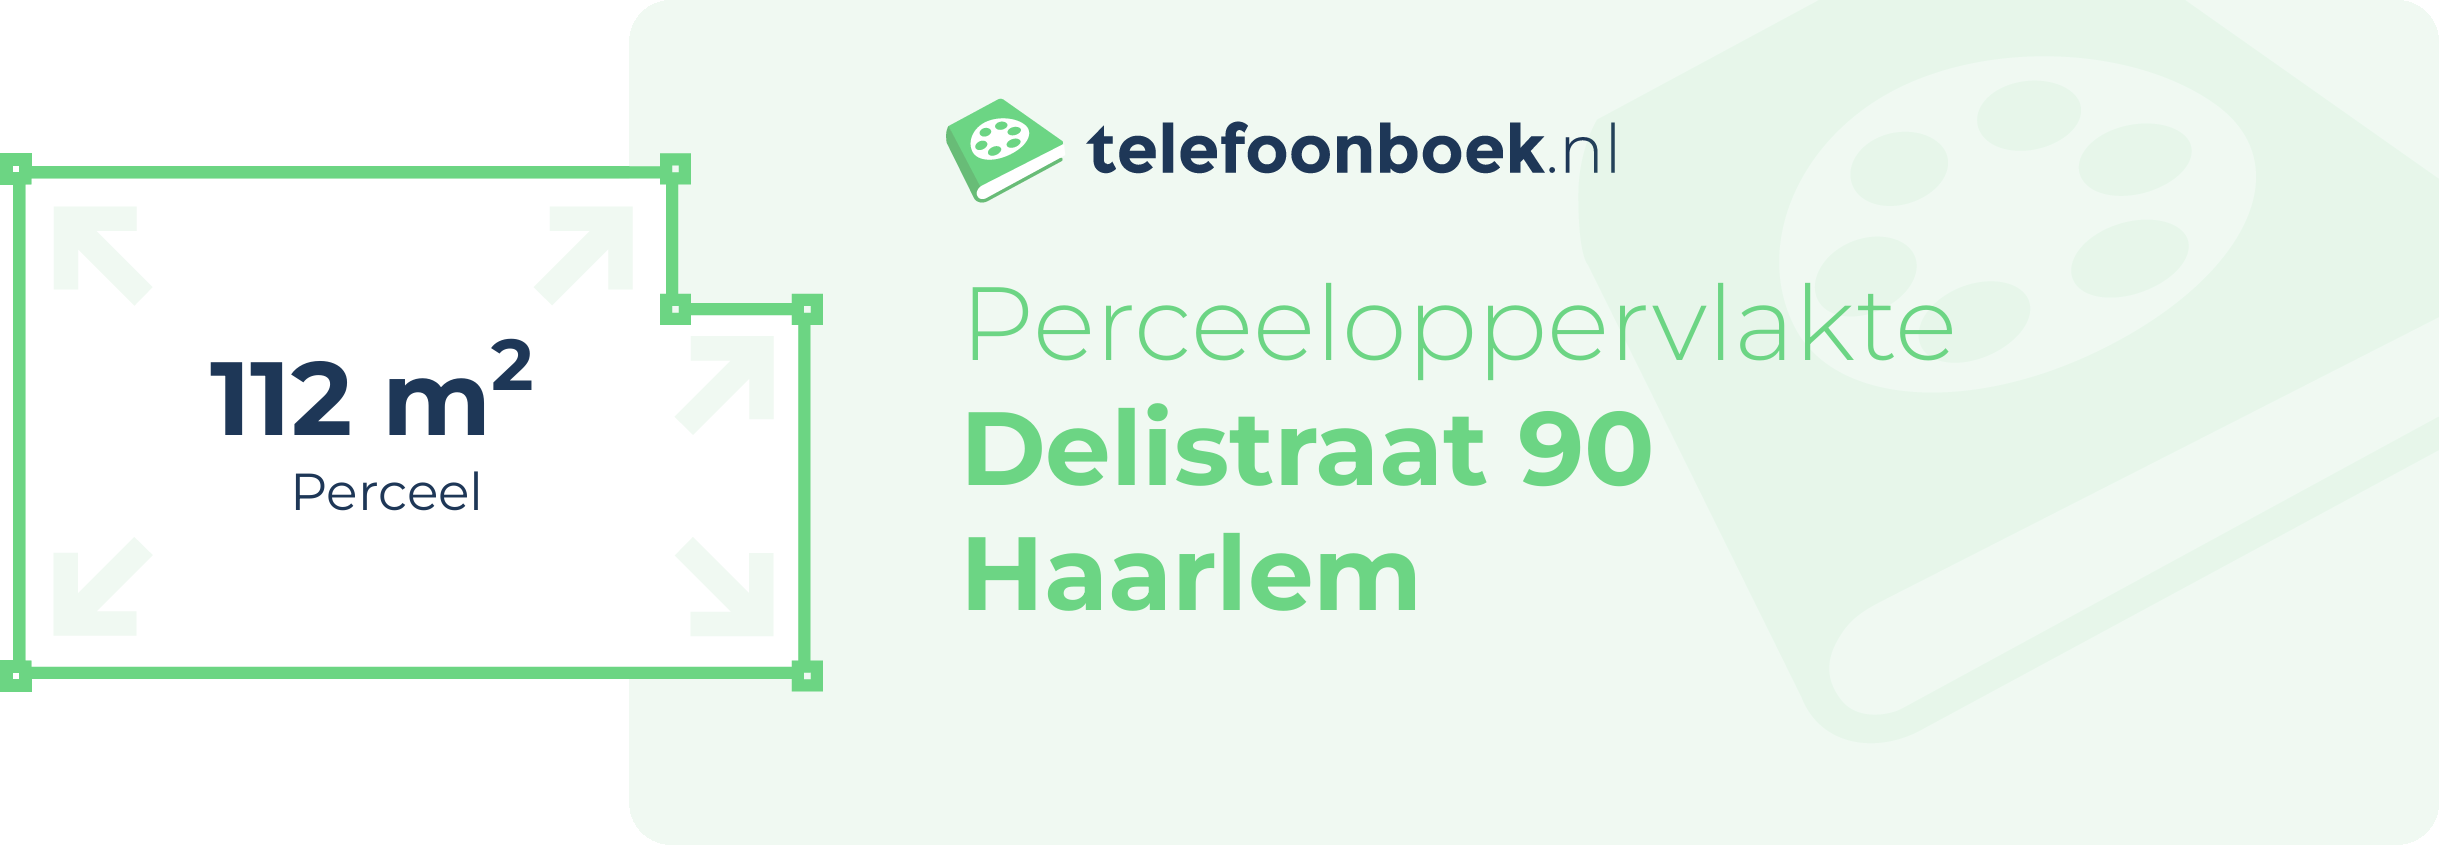 Perceeloppervlakte Delistraat 90 Haarlem